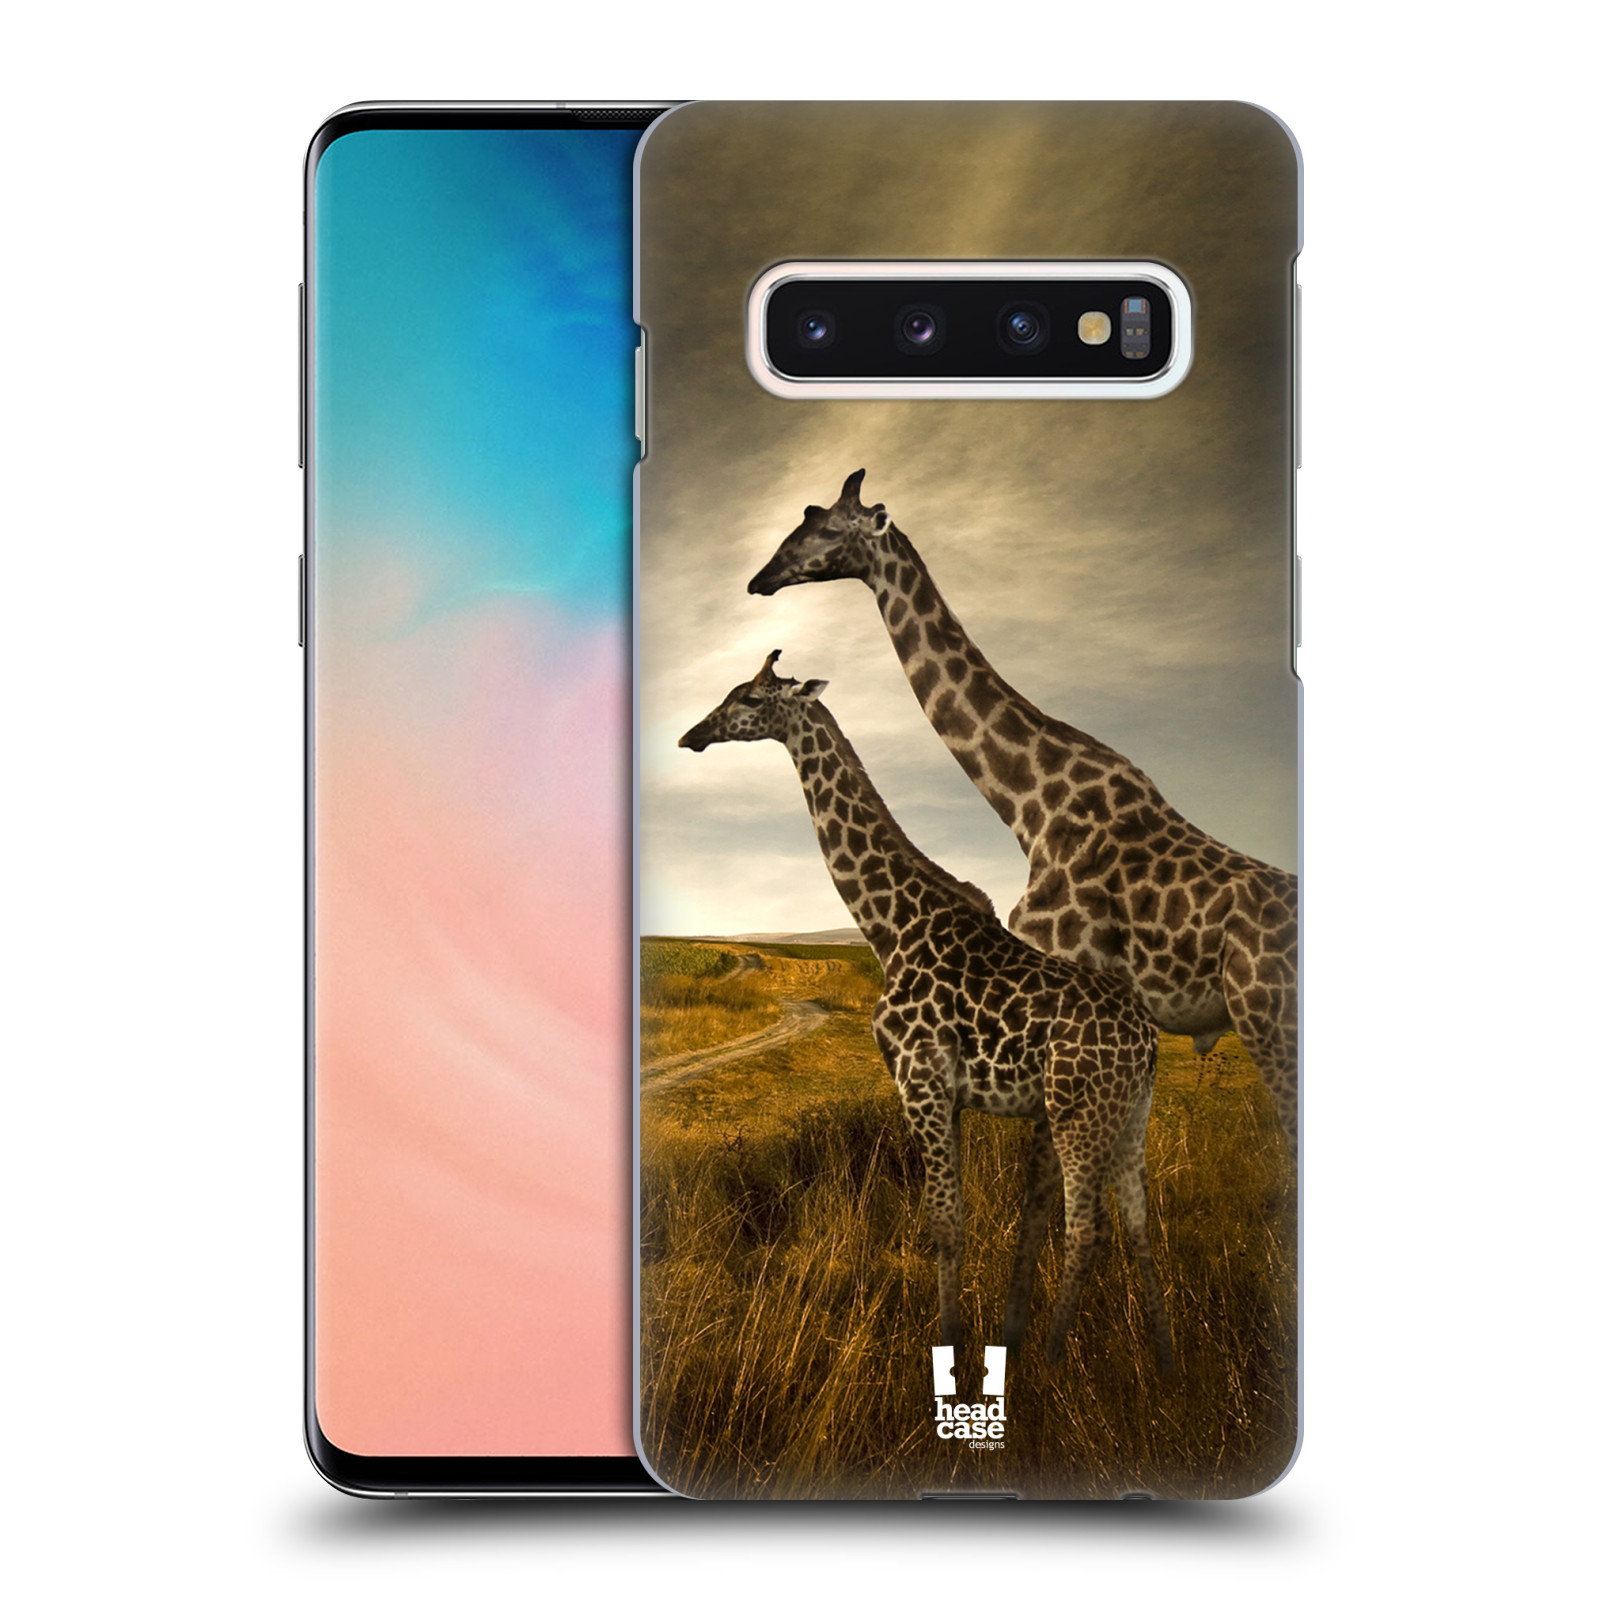 Zadní obal pro mobil Samsung Galaxy S10 - HEAD CASE - Svět zvířat žirafy